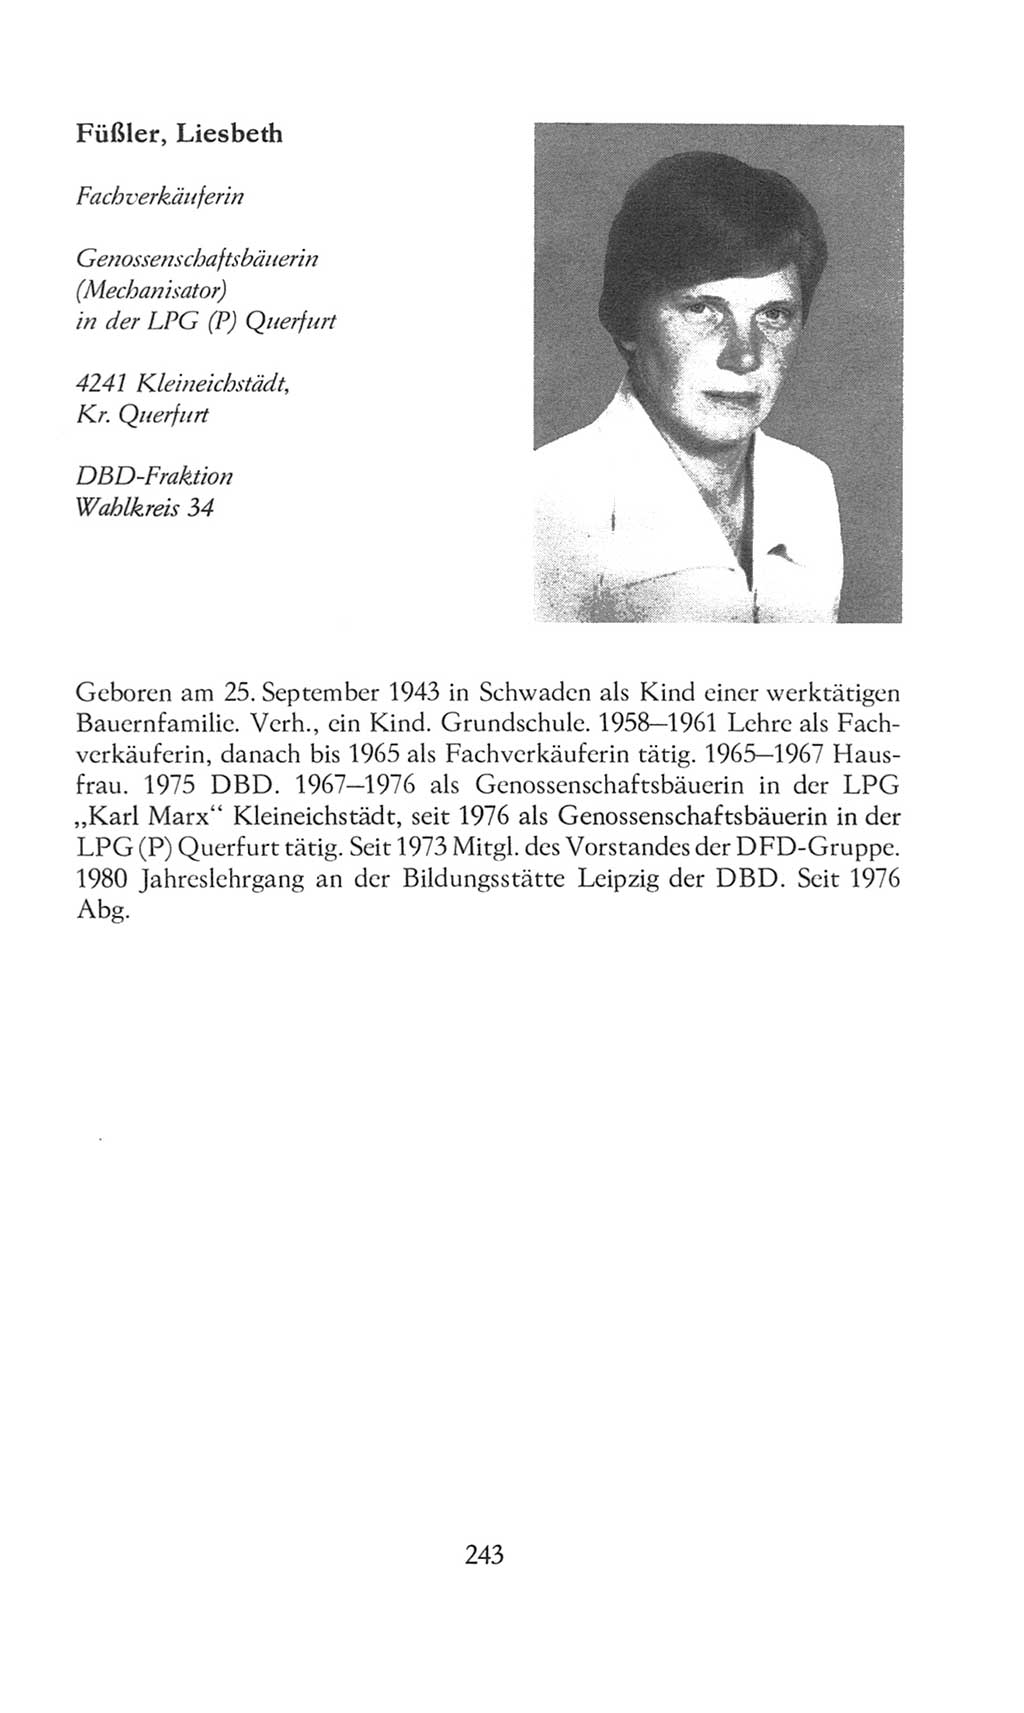 Volkskammer (VK) der Deutschen Demokratischen Republik (DDR), 8. Wahlperiode 1981-1986, Seite 243 (VK. DDR 8. WP. 1981-1986, S. 243)